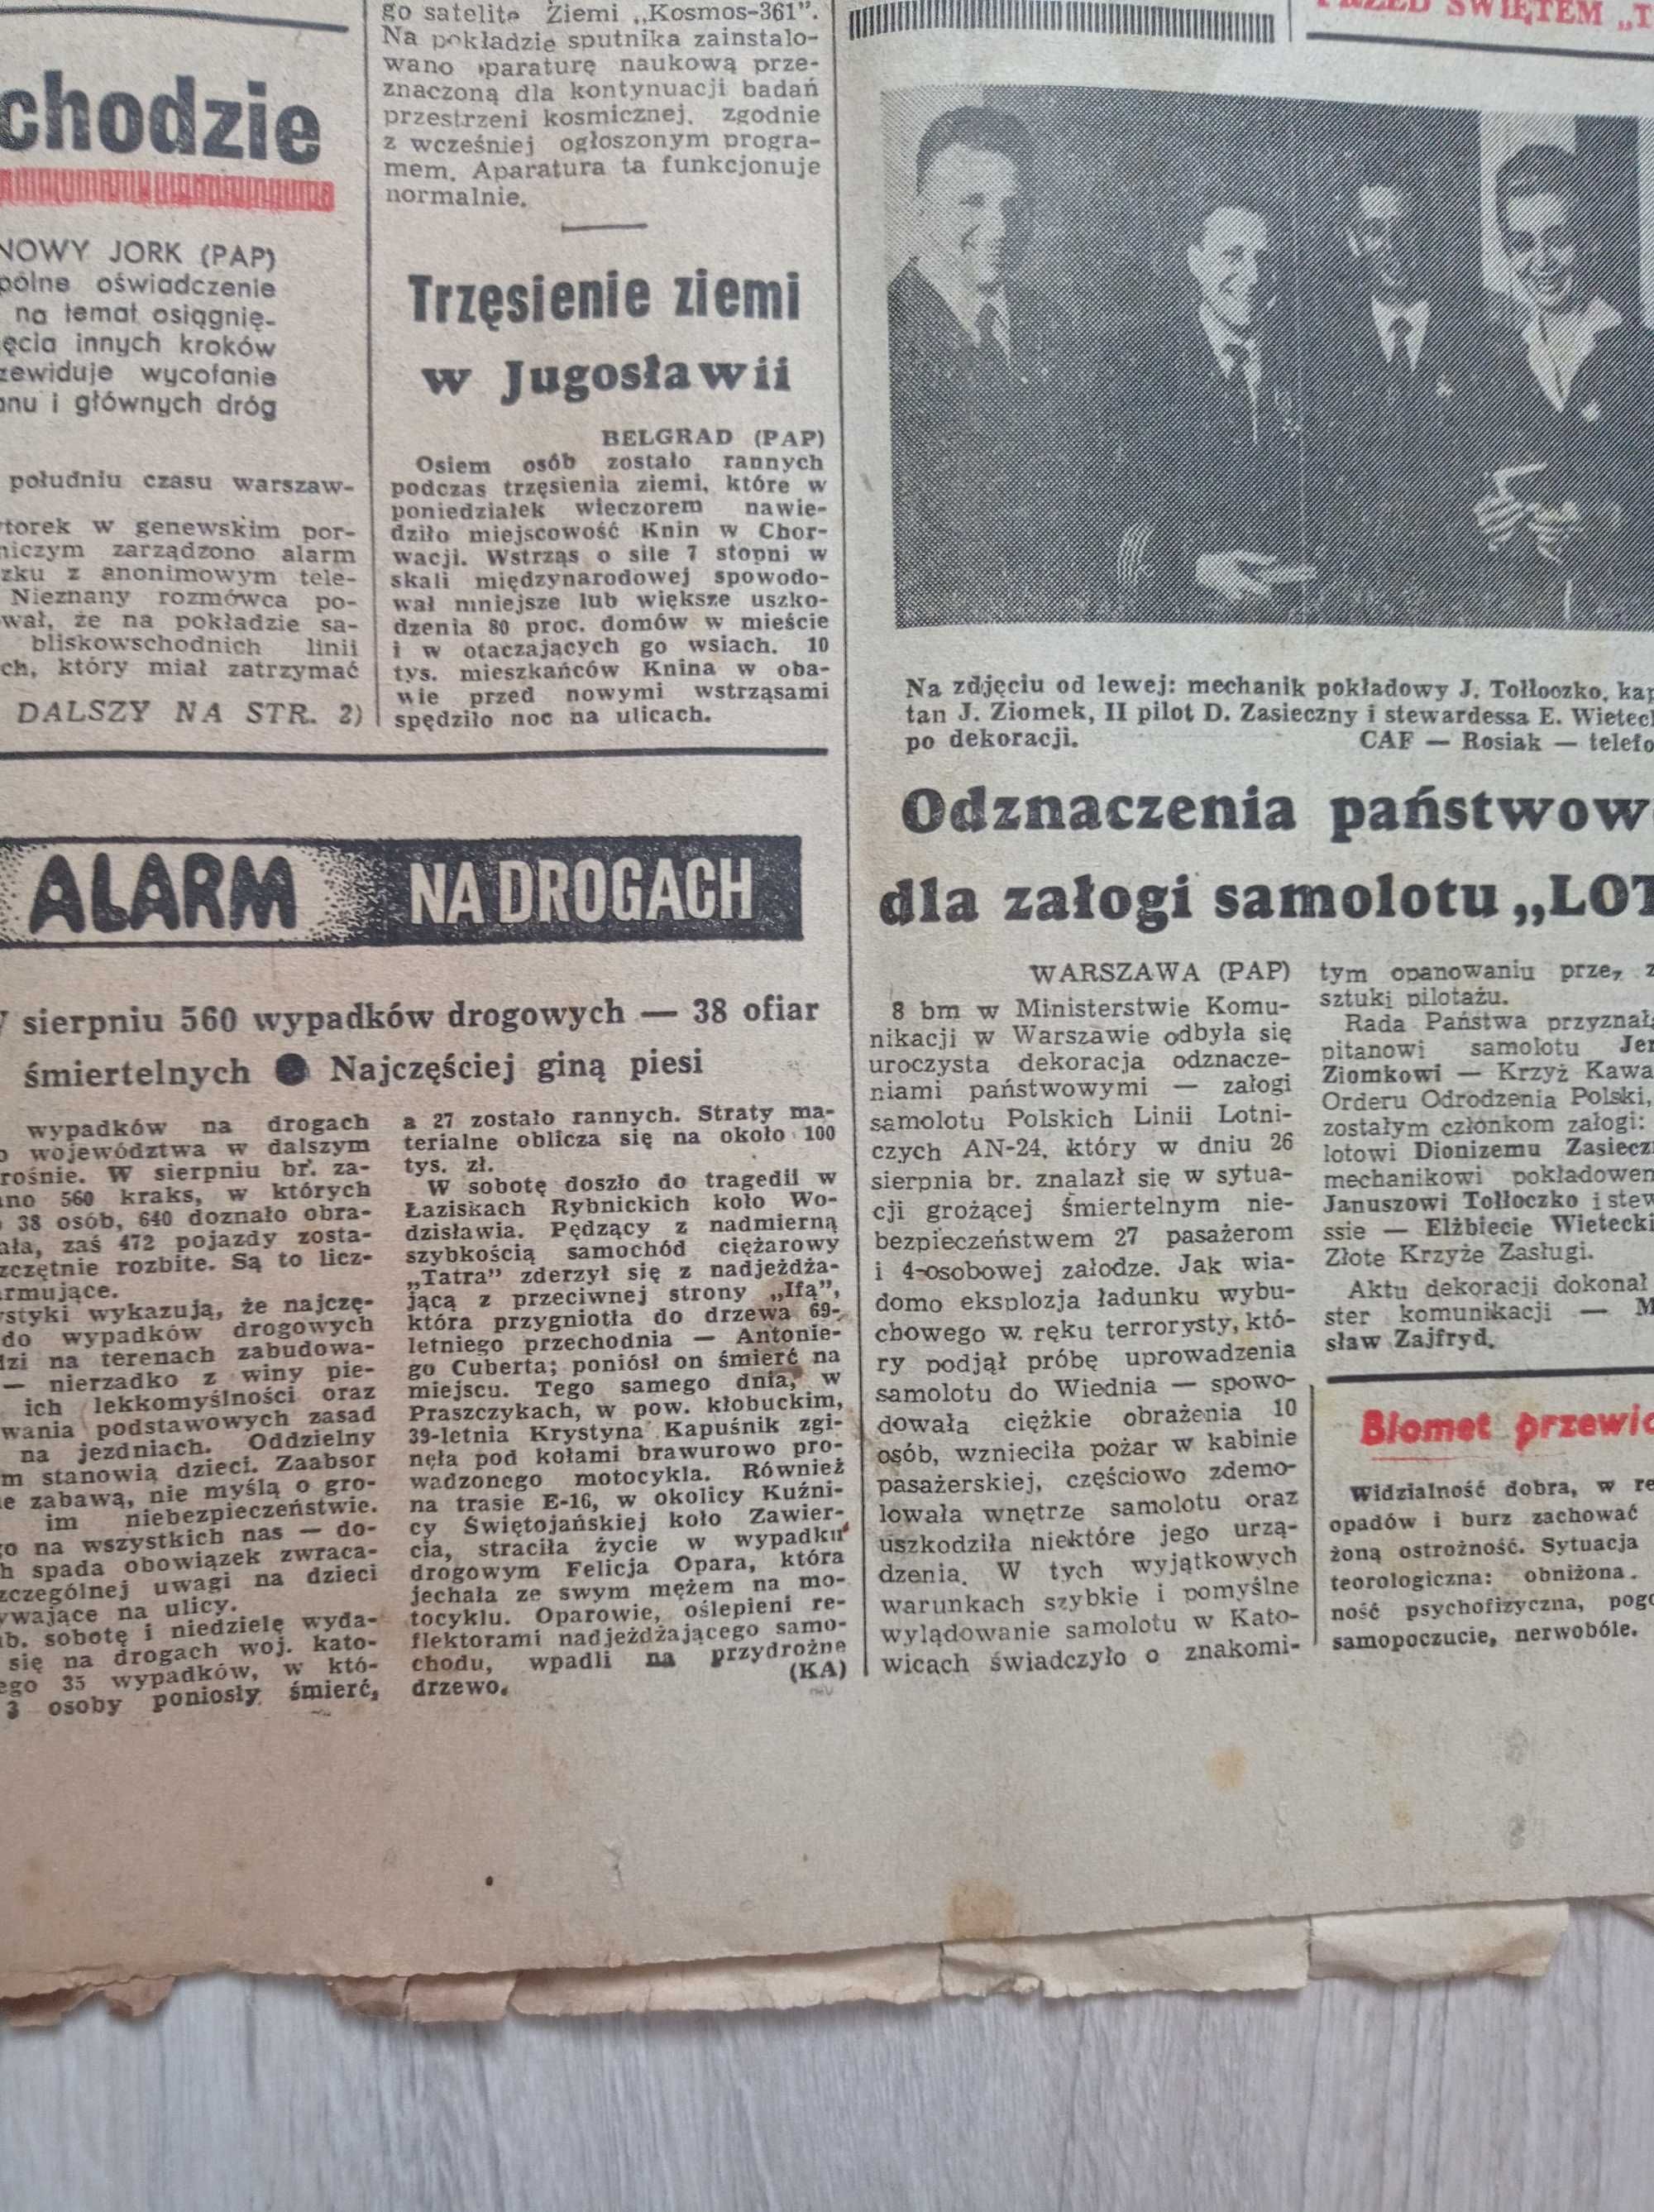 Trybuna robotnicza 214 / 1970